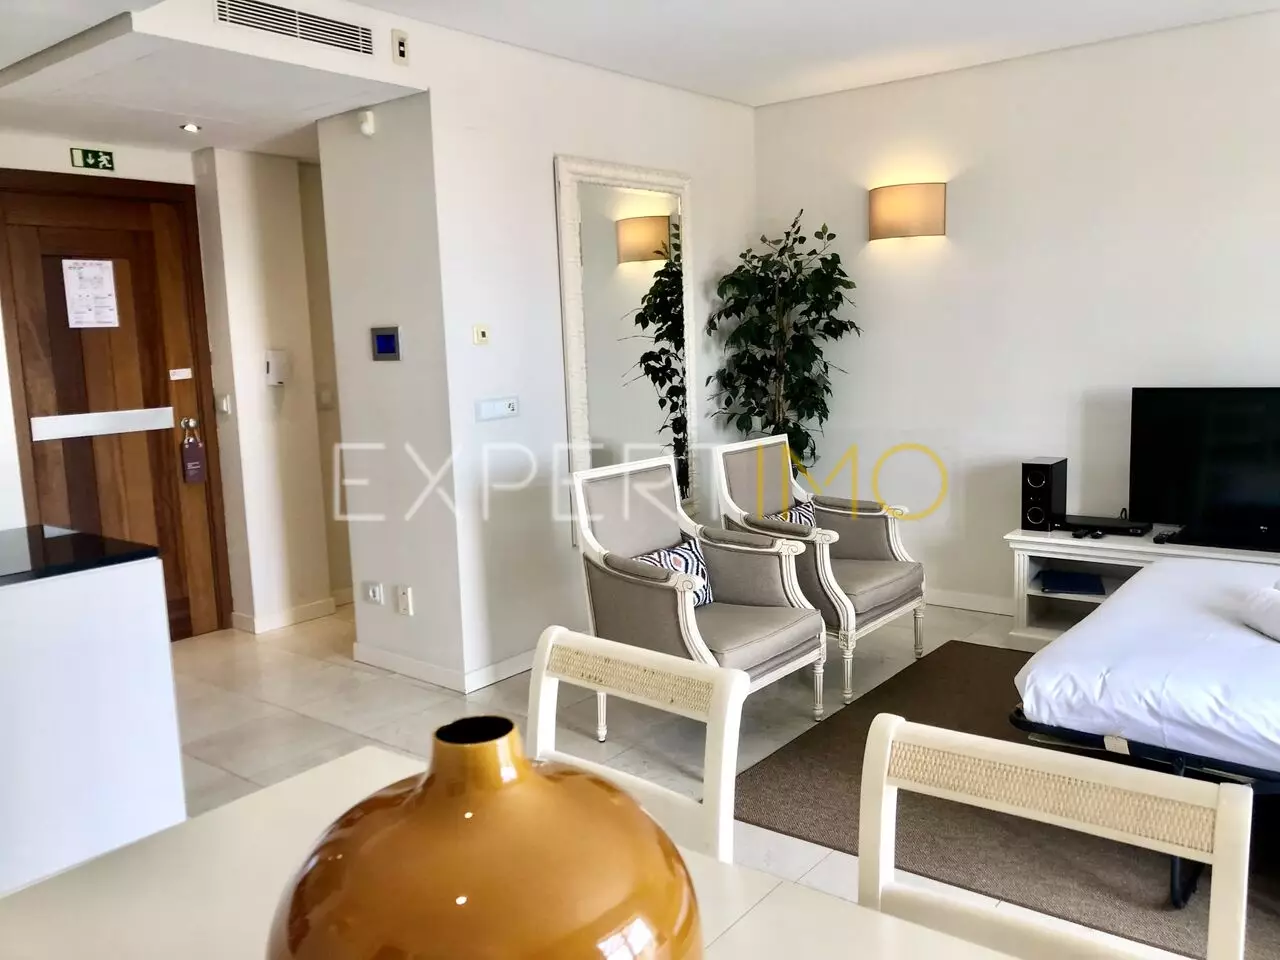 (21)Opportunité Exclusive : Luxueux Appartement de 88,20 m2 à Monte Santo, complexe 5 étoiles